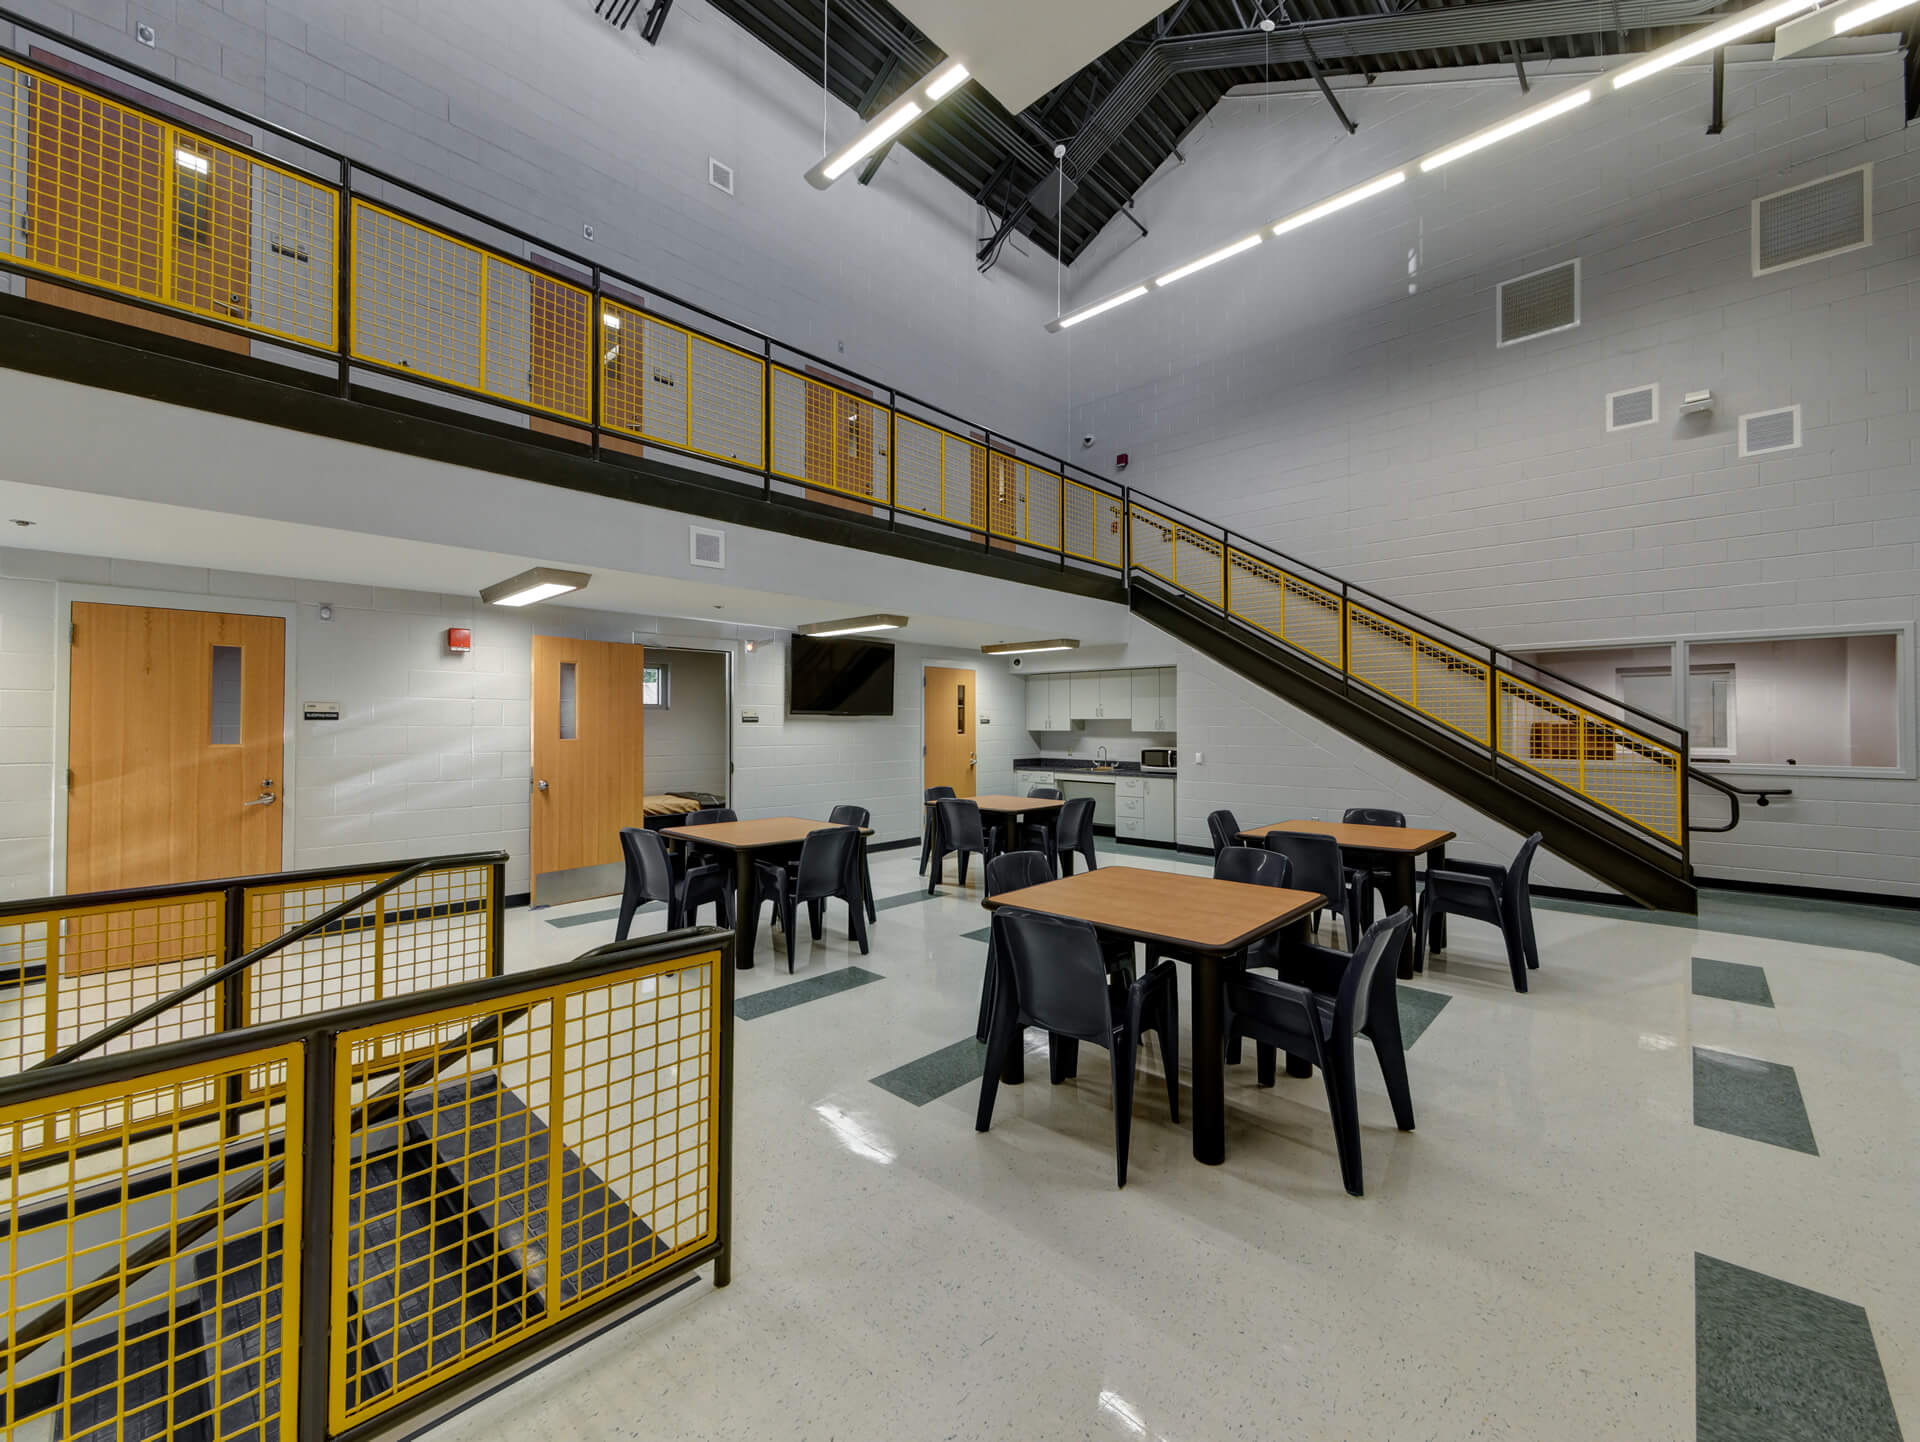 Denton County Juvenile Probation & Detention Center Ratcliff